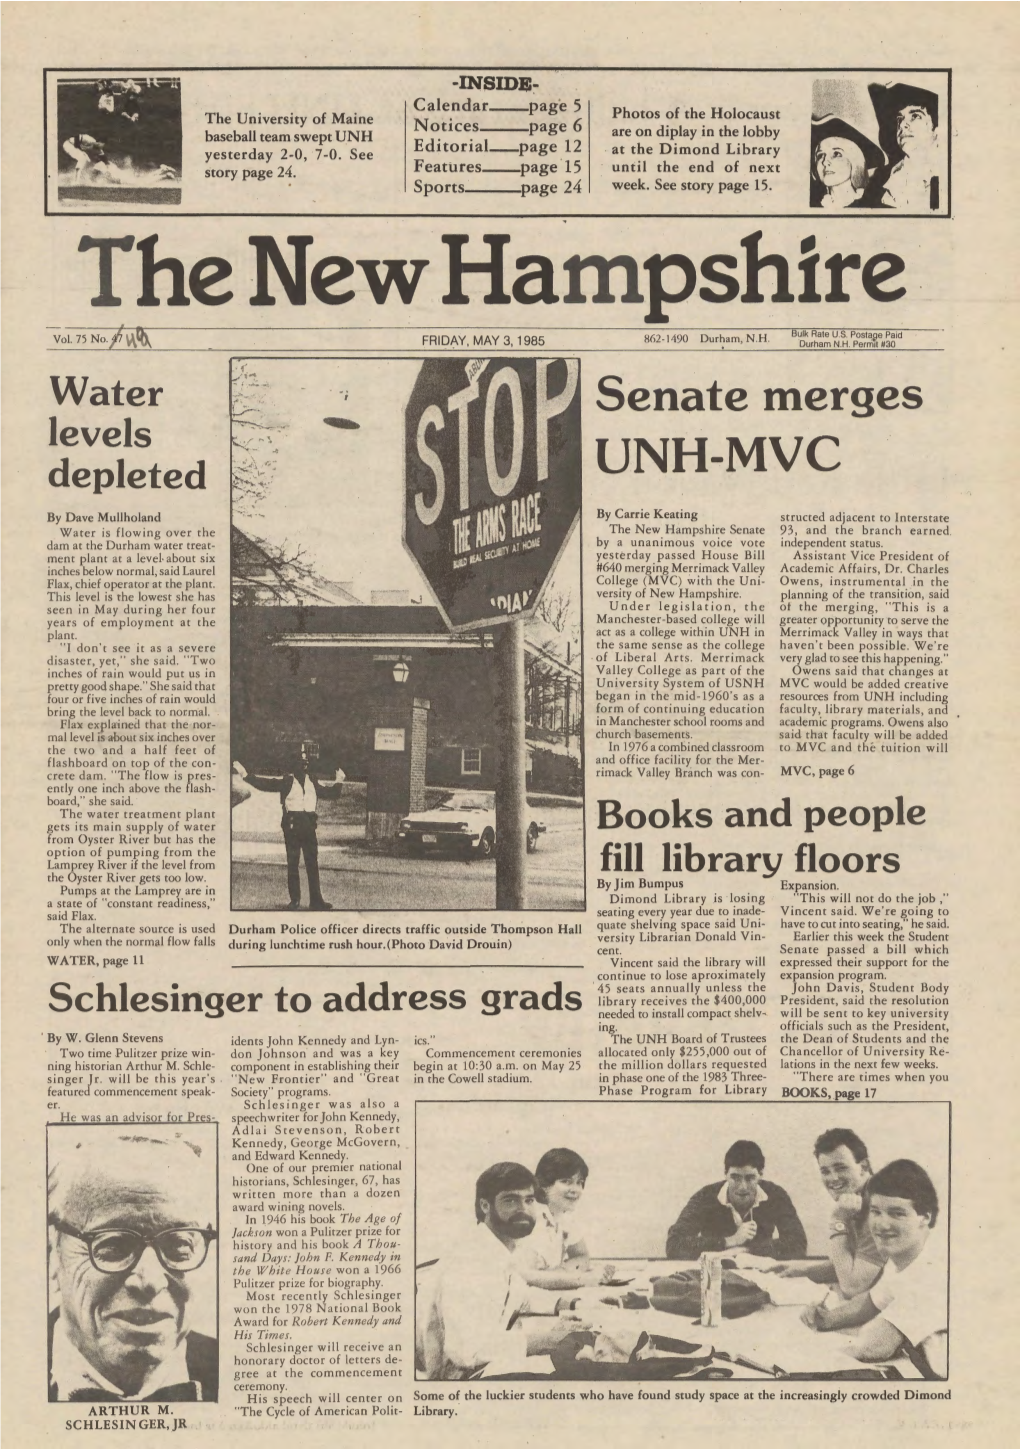 The New Hampshire, Vol. 75, No. 49 (May 3, 1985)